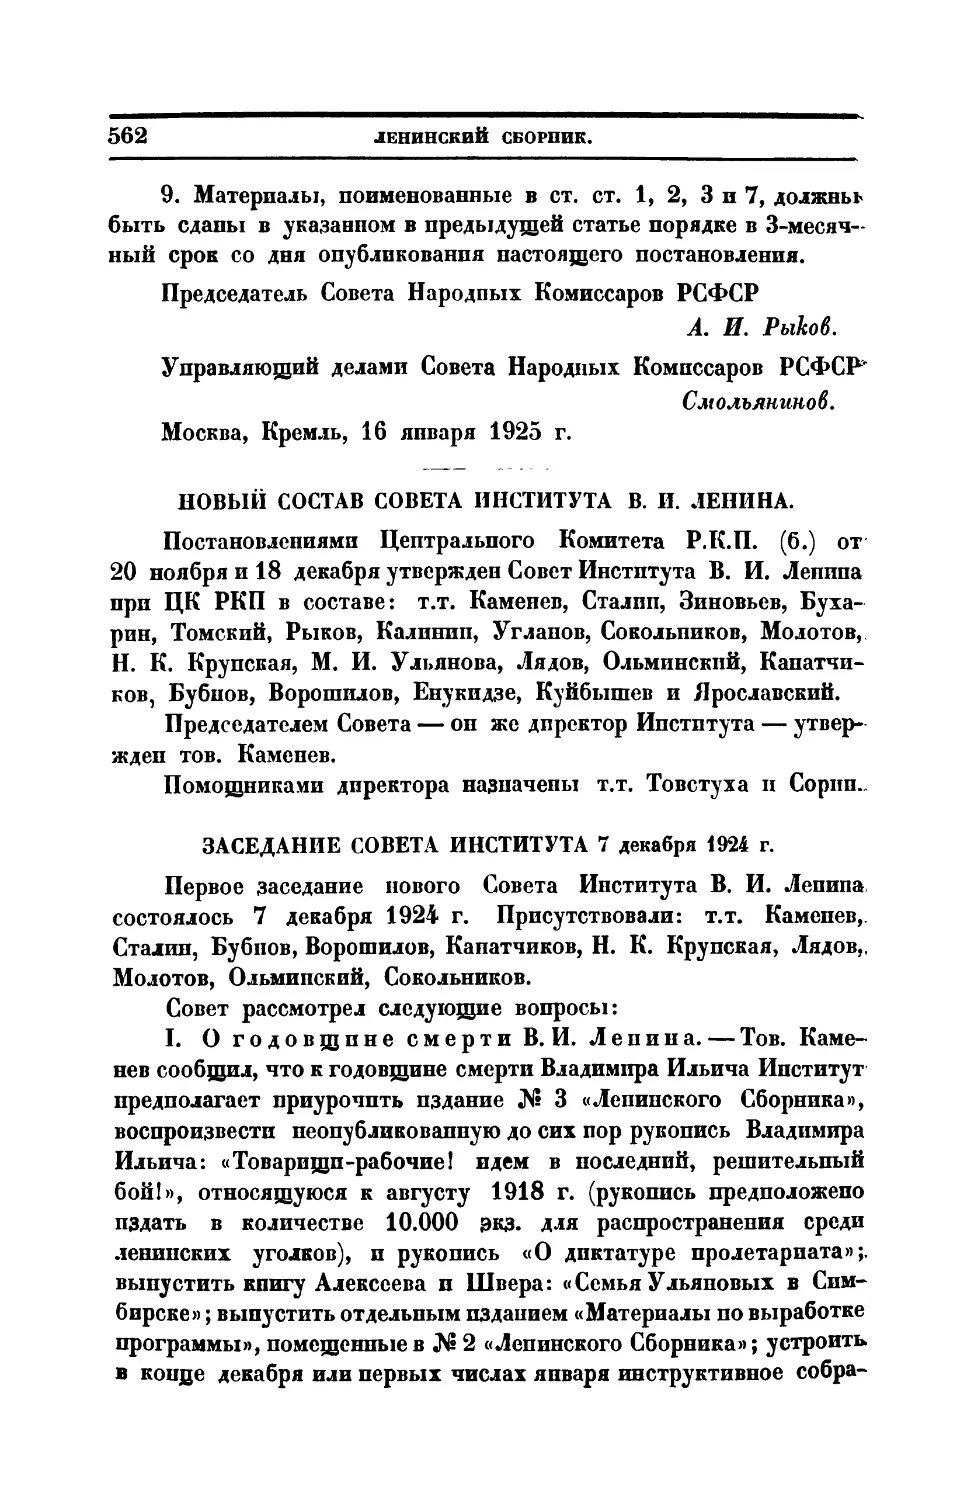 Новый состав Совета Института В. И. Ленина
Заседание Совета Института 7 XII 1921 г.